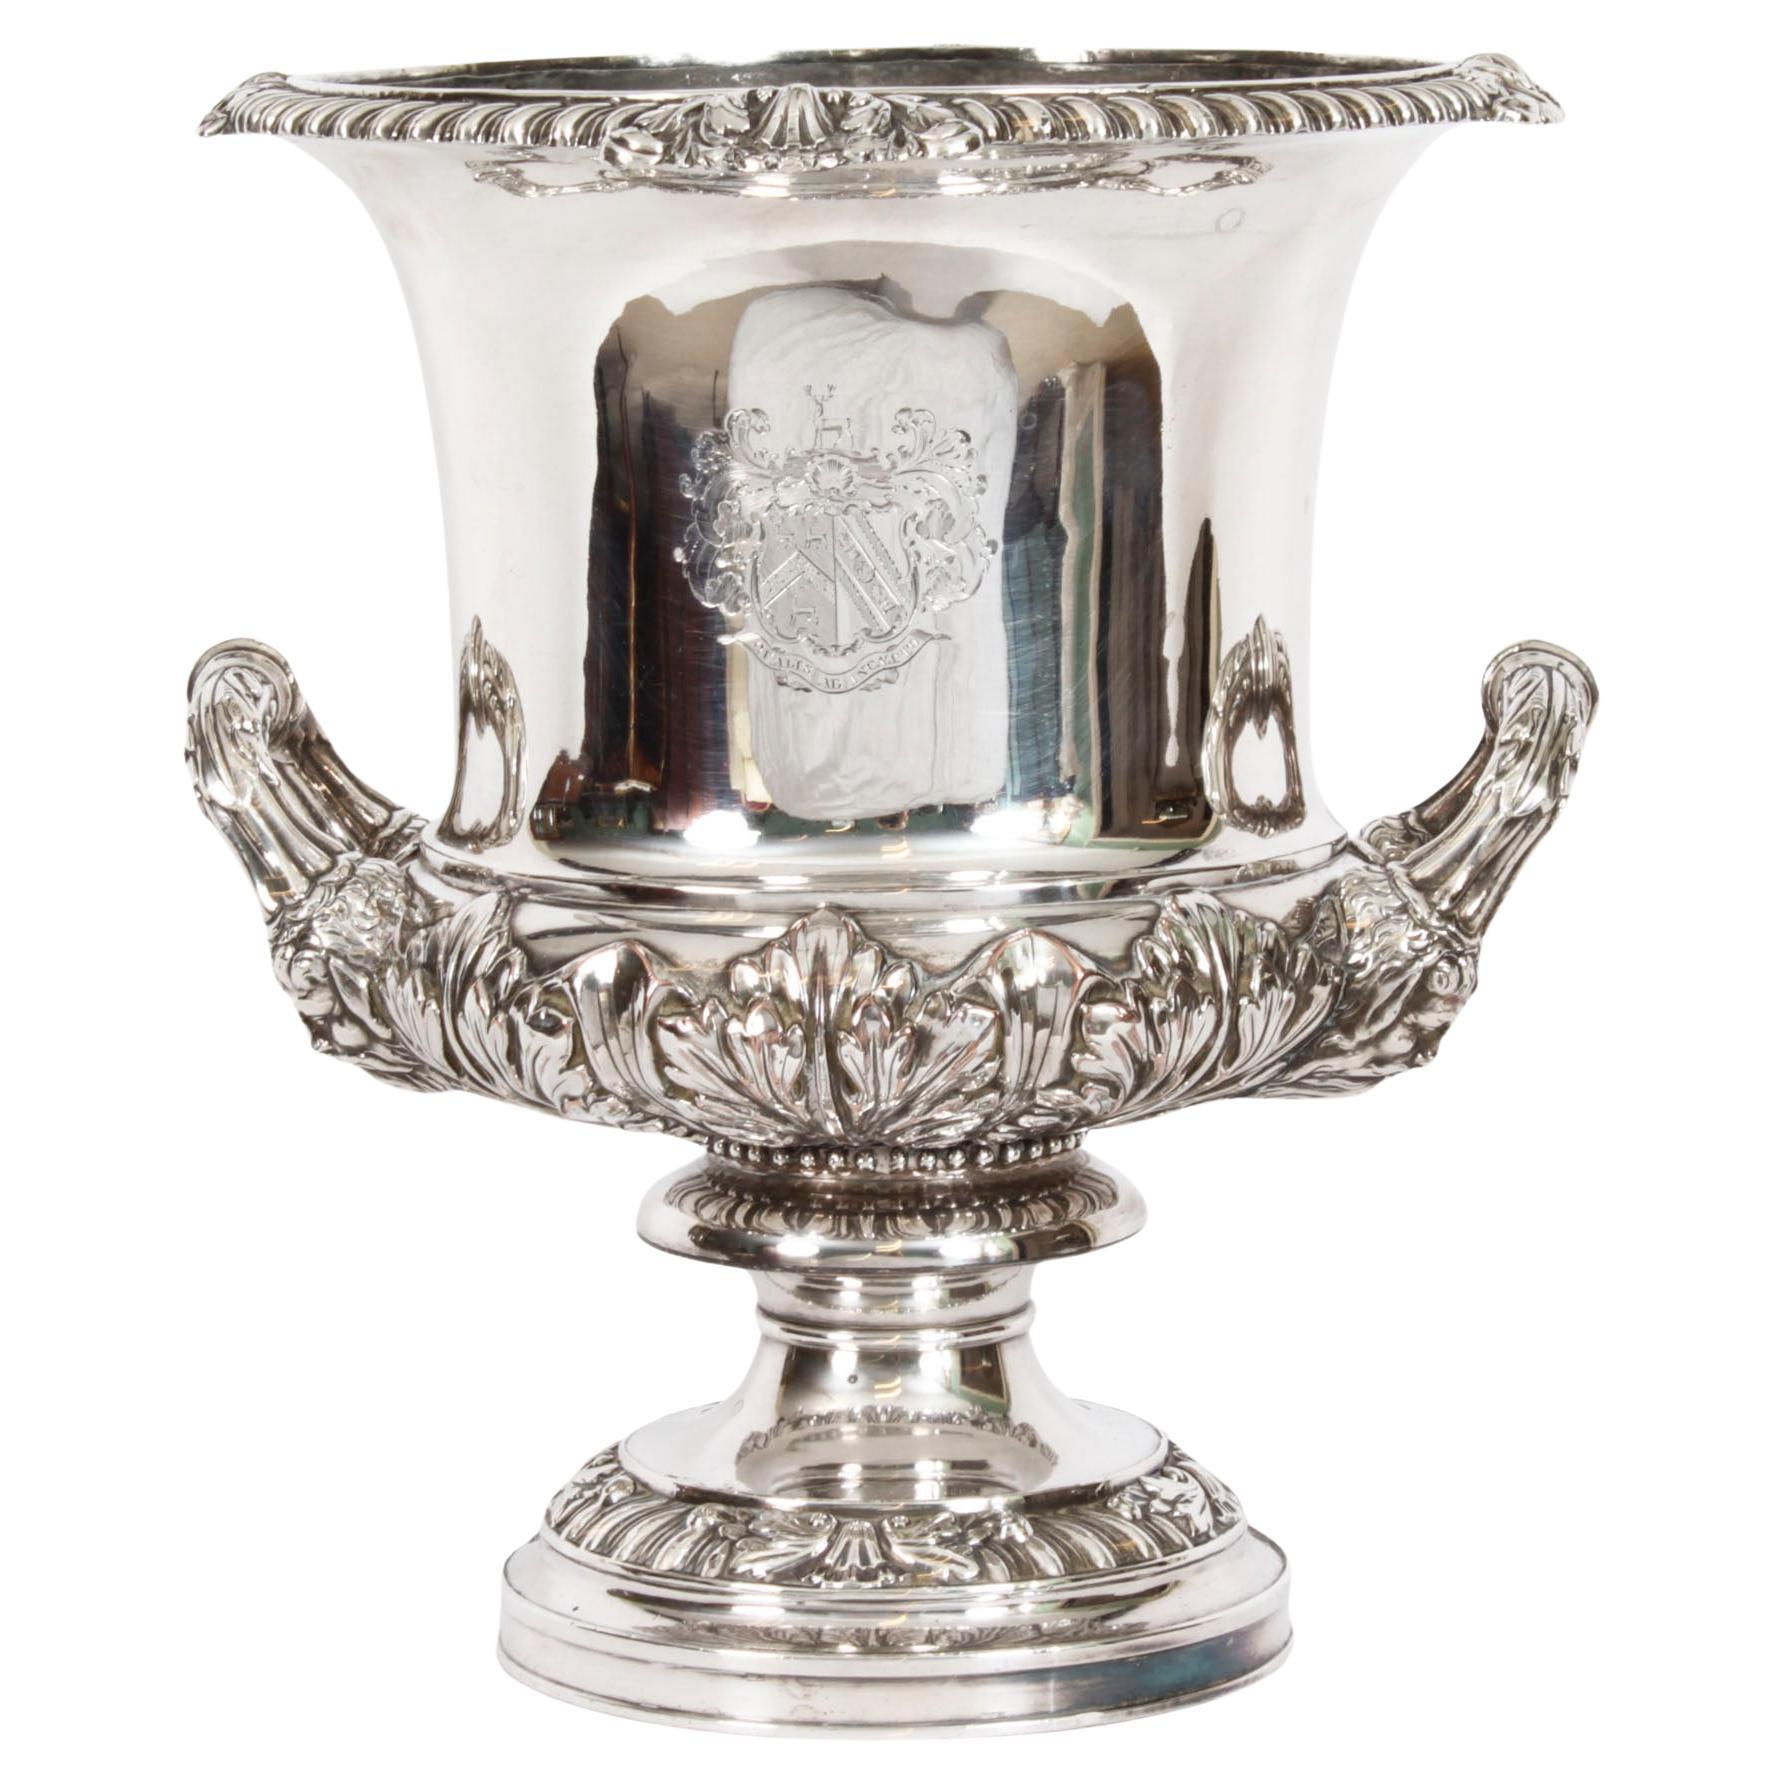 1790s Serveware, Ceramics, Silver and Glass